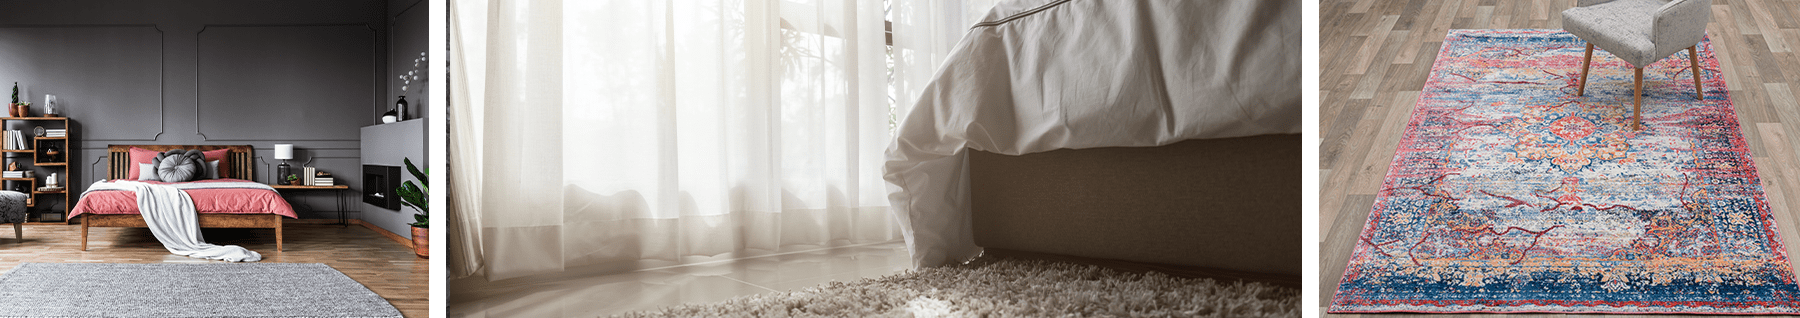 lit avec tapis poils longs, tapis court gris et tapis persan